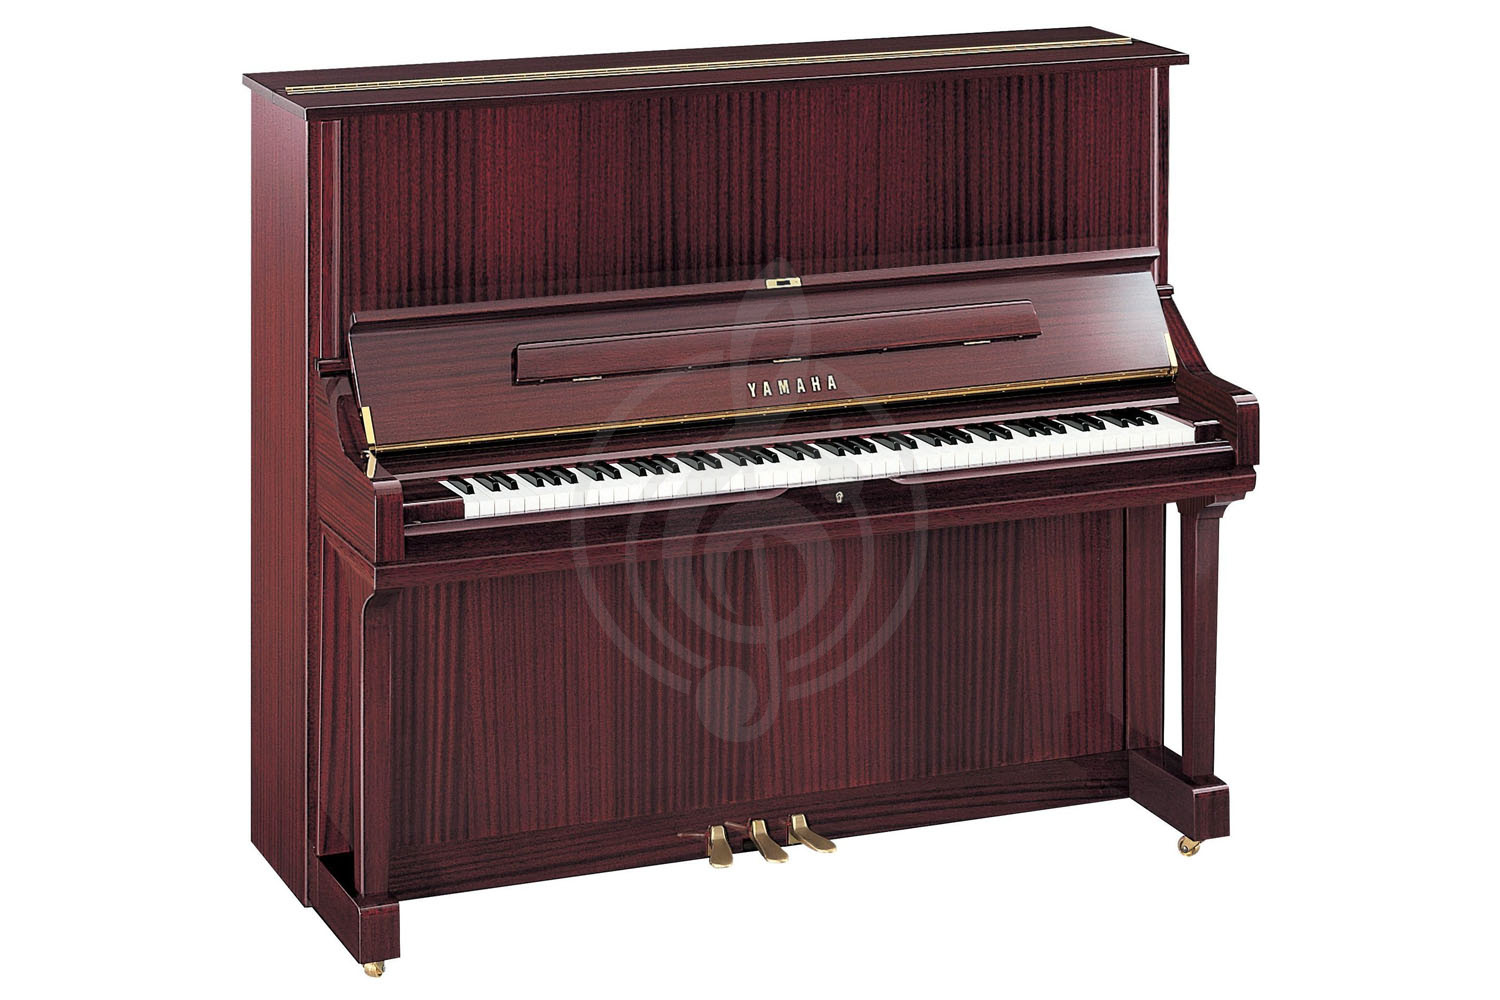 Акустическое пианино Пианино Yamaha Yamaha U3 PM - пианино 131см. цвет красное дерево, полированное, с банкеткой U3PM//Q.LZ.WITHBENCH - фото 1